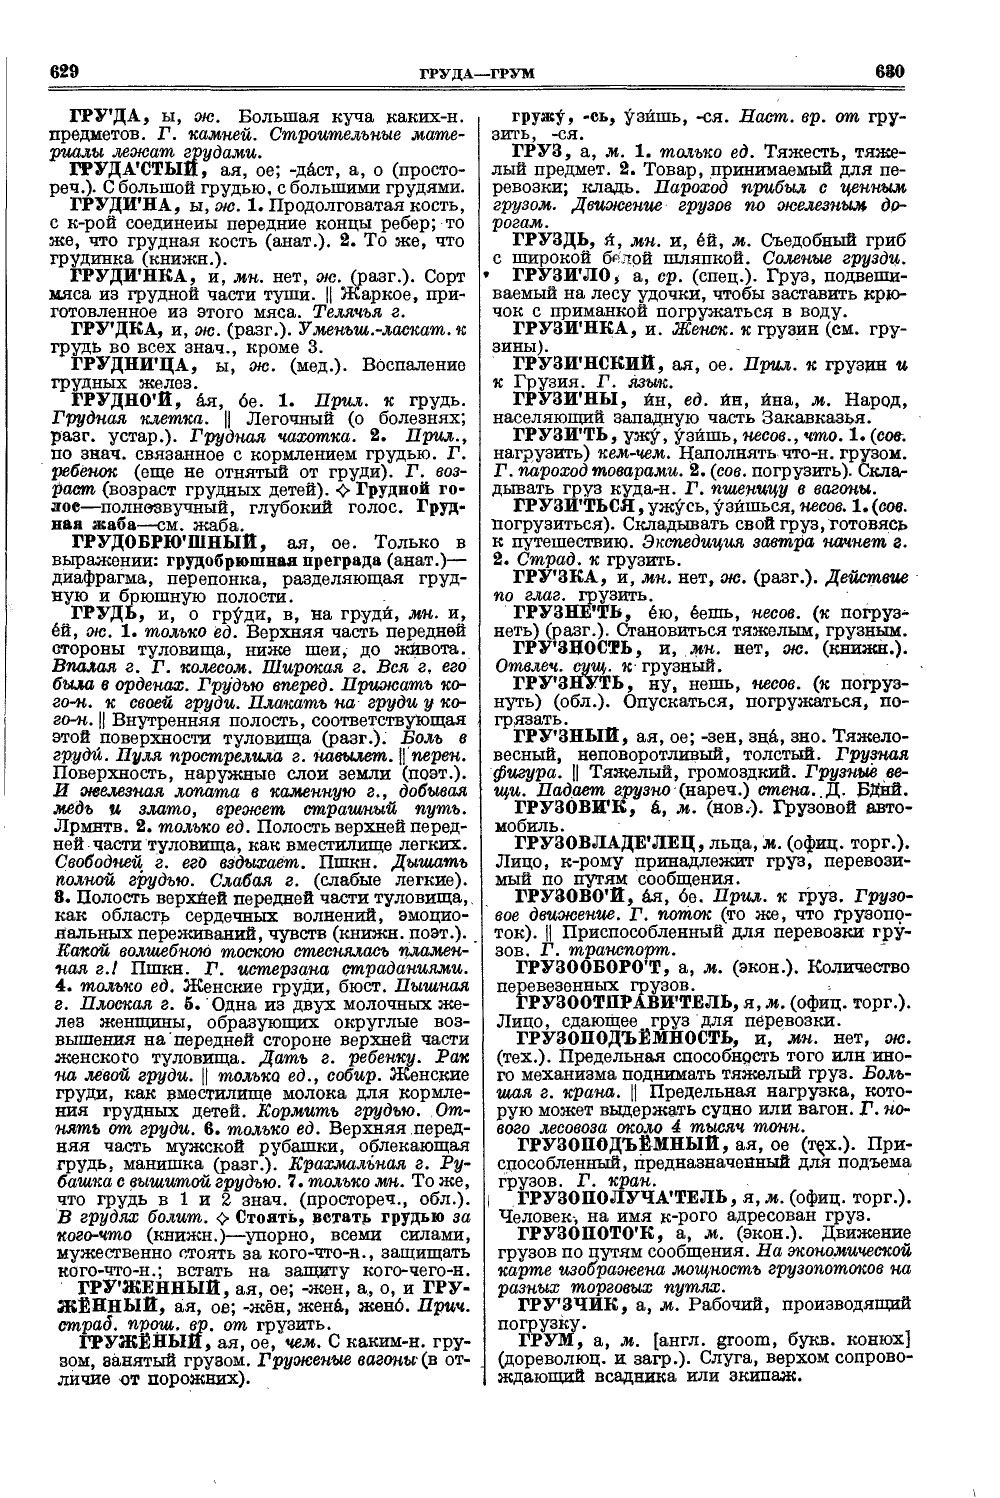 Фотокопия pdf / скан страницы 353 толкового словаря Ушакова (том 1)